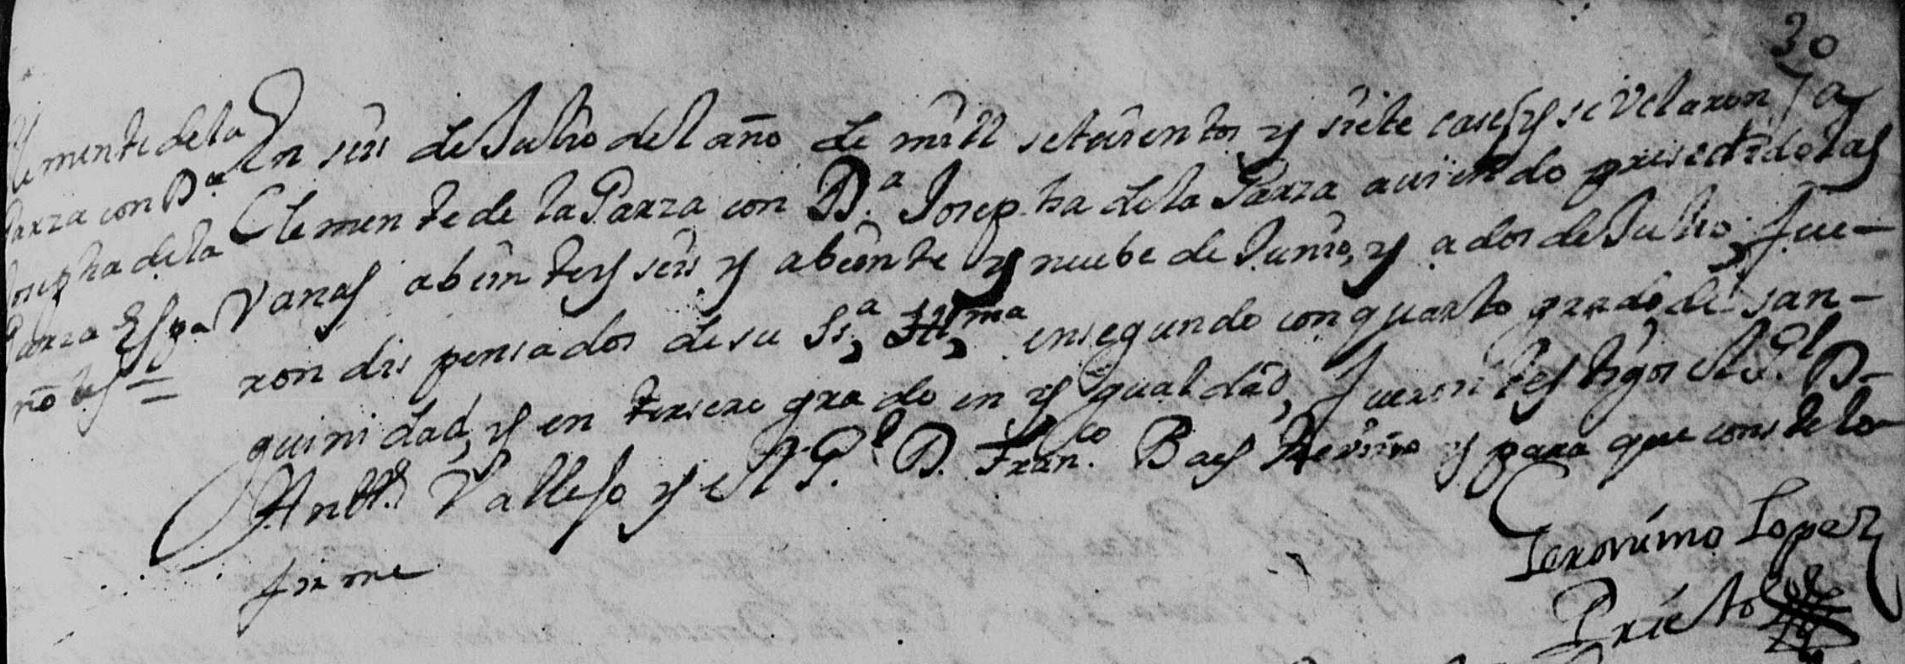 Clemente de la Garza and Josefa Catalina Garza FamilySearch Marriage Monterrey 1706 Pg. 78